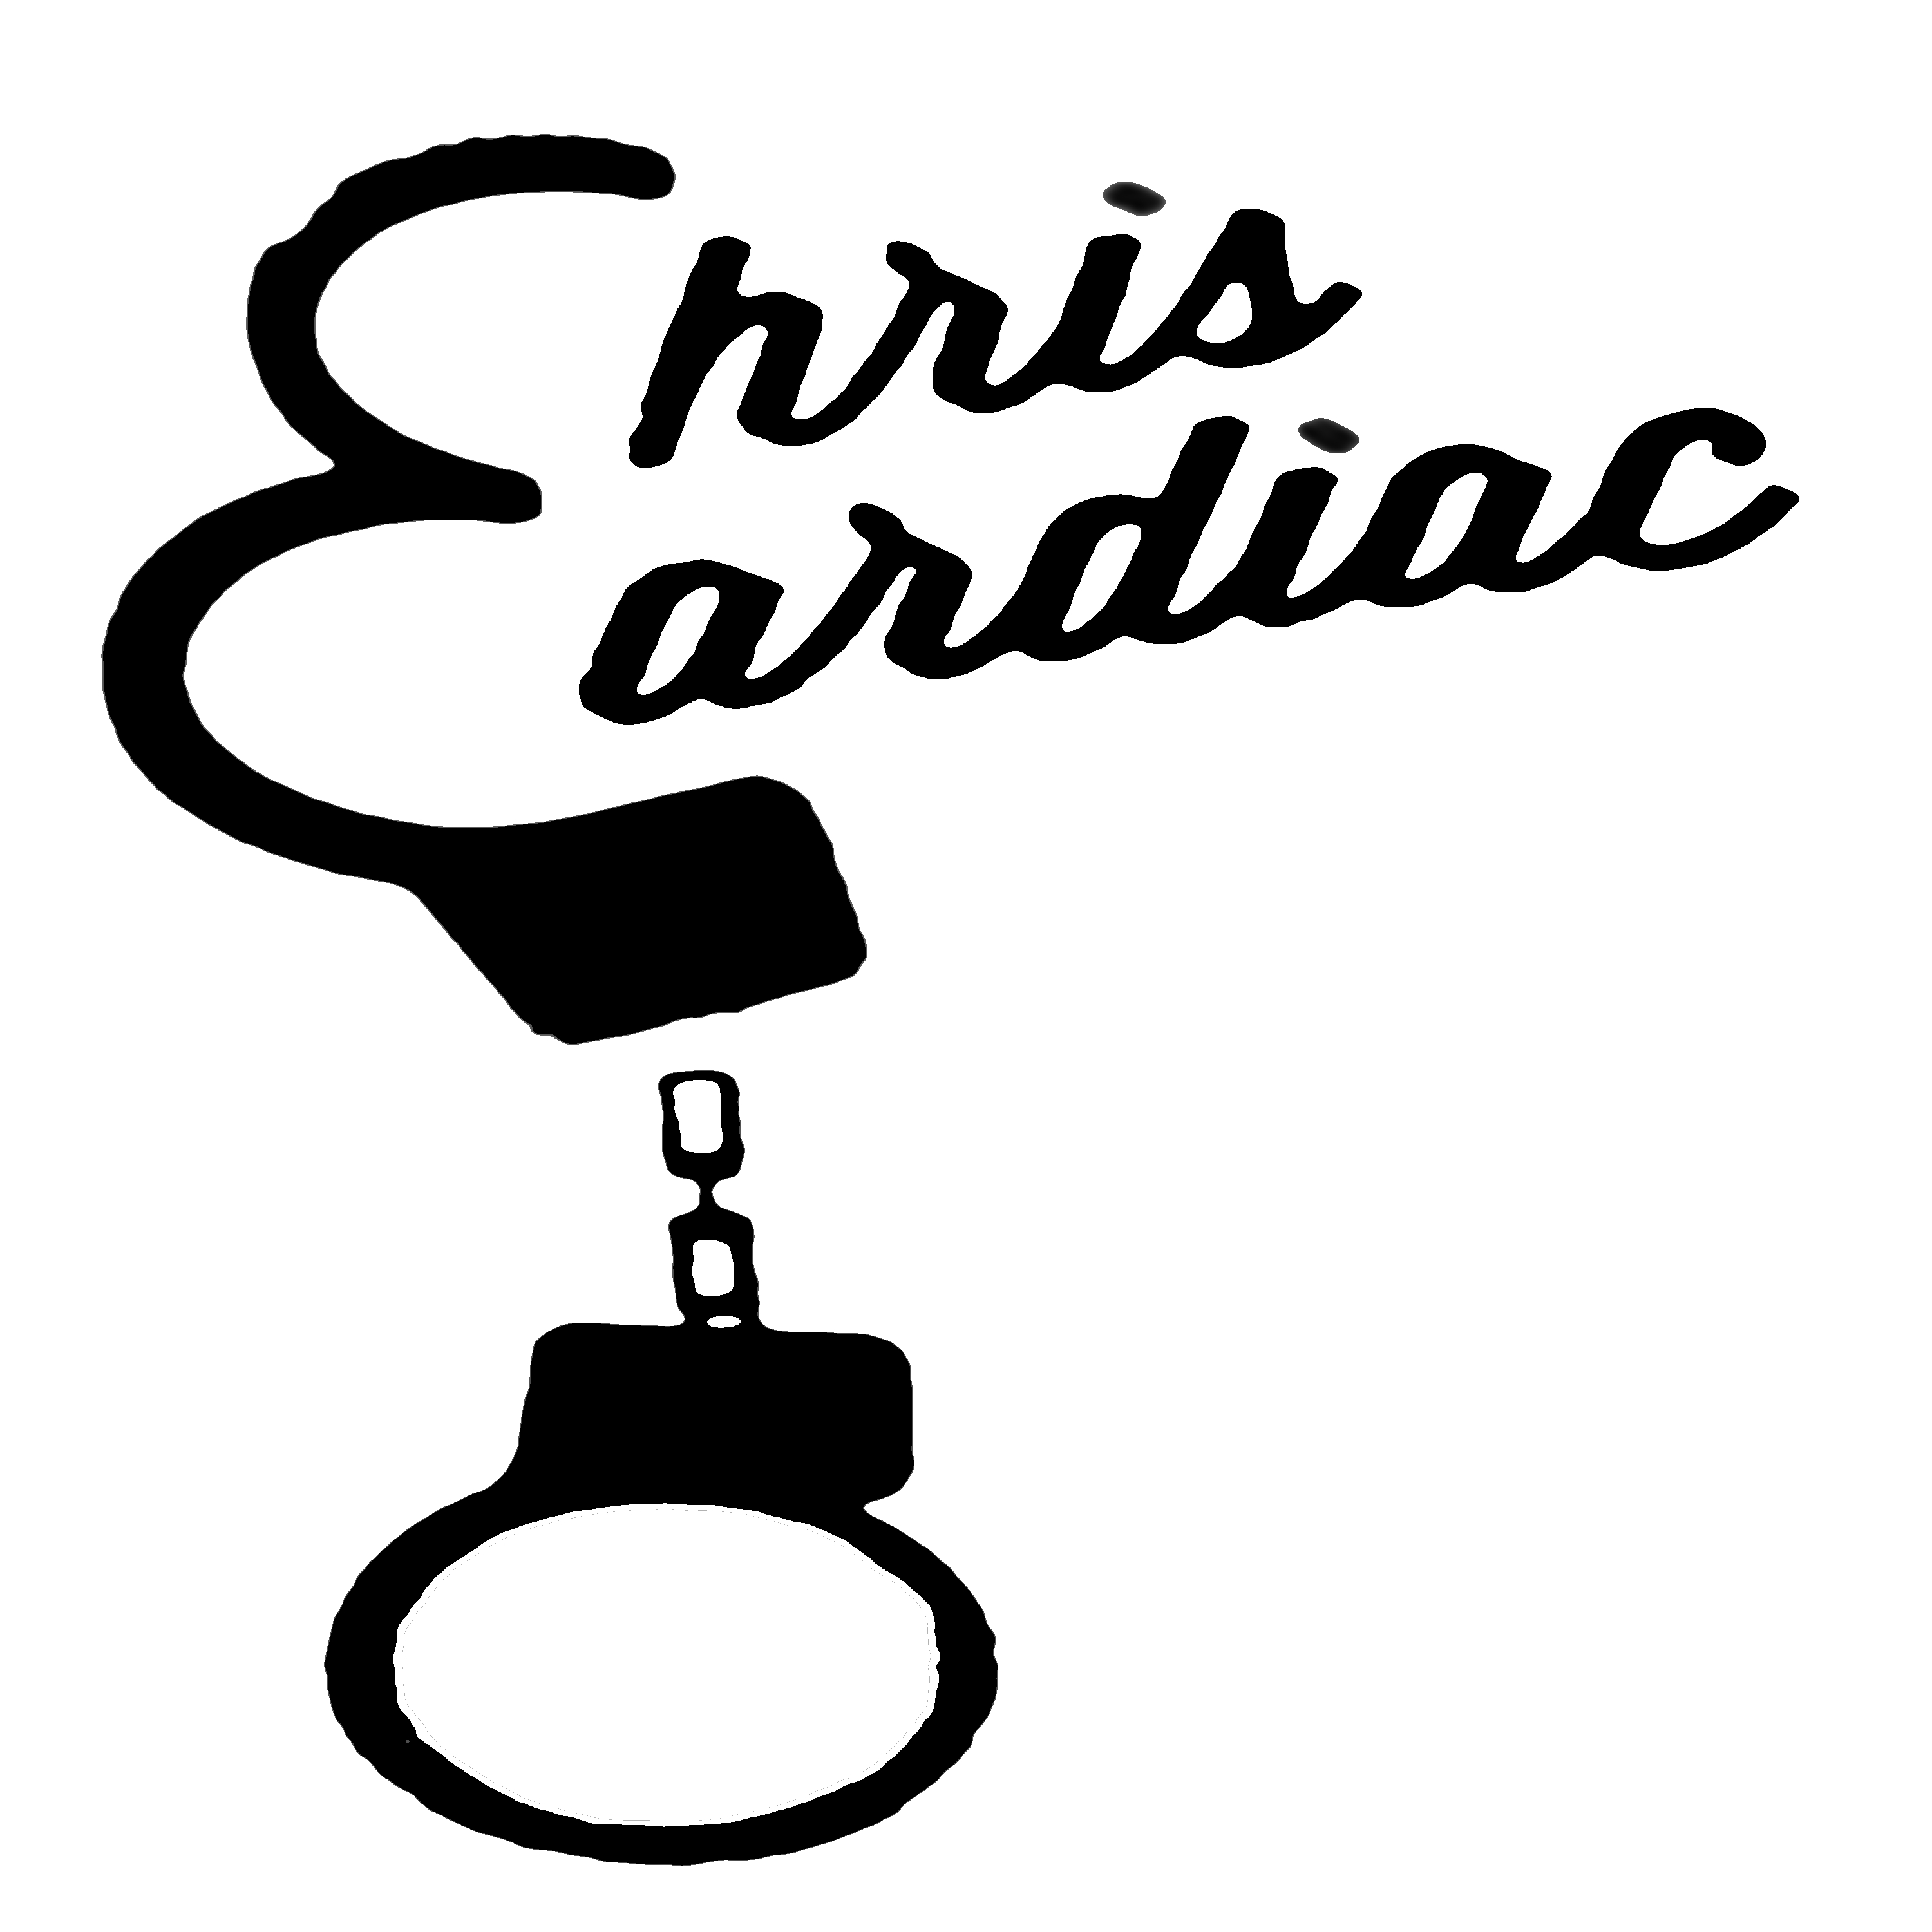 Chris_Cardiac_logo.jpg